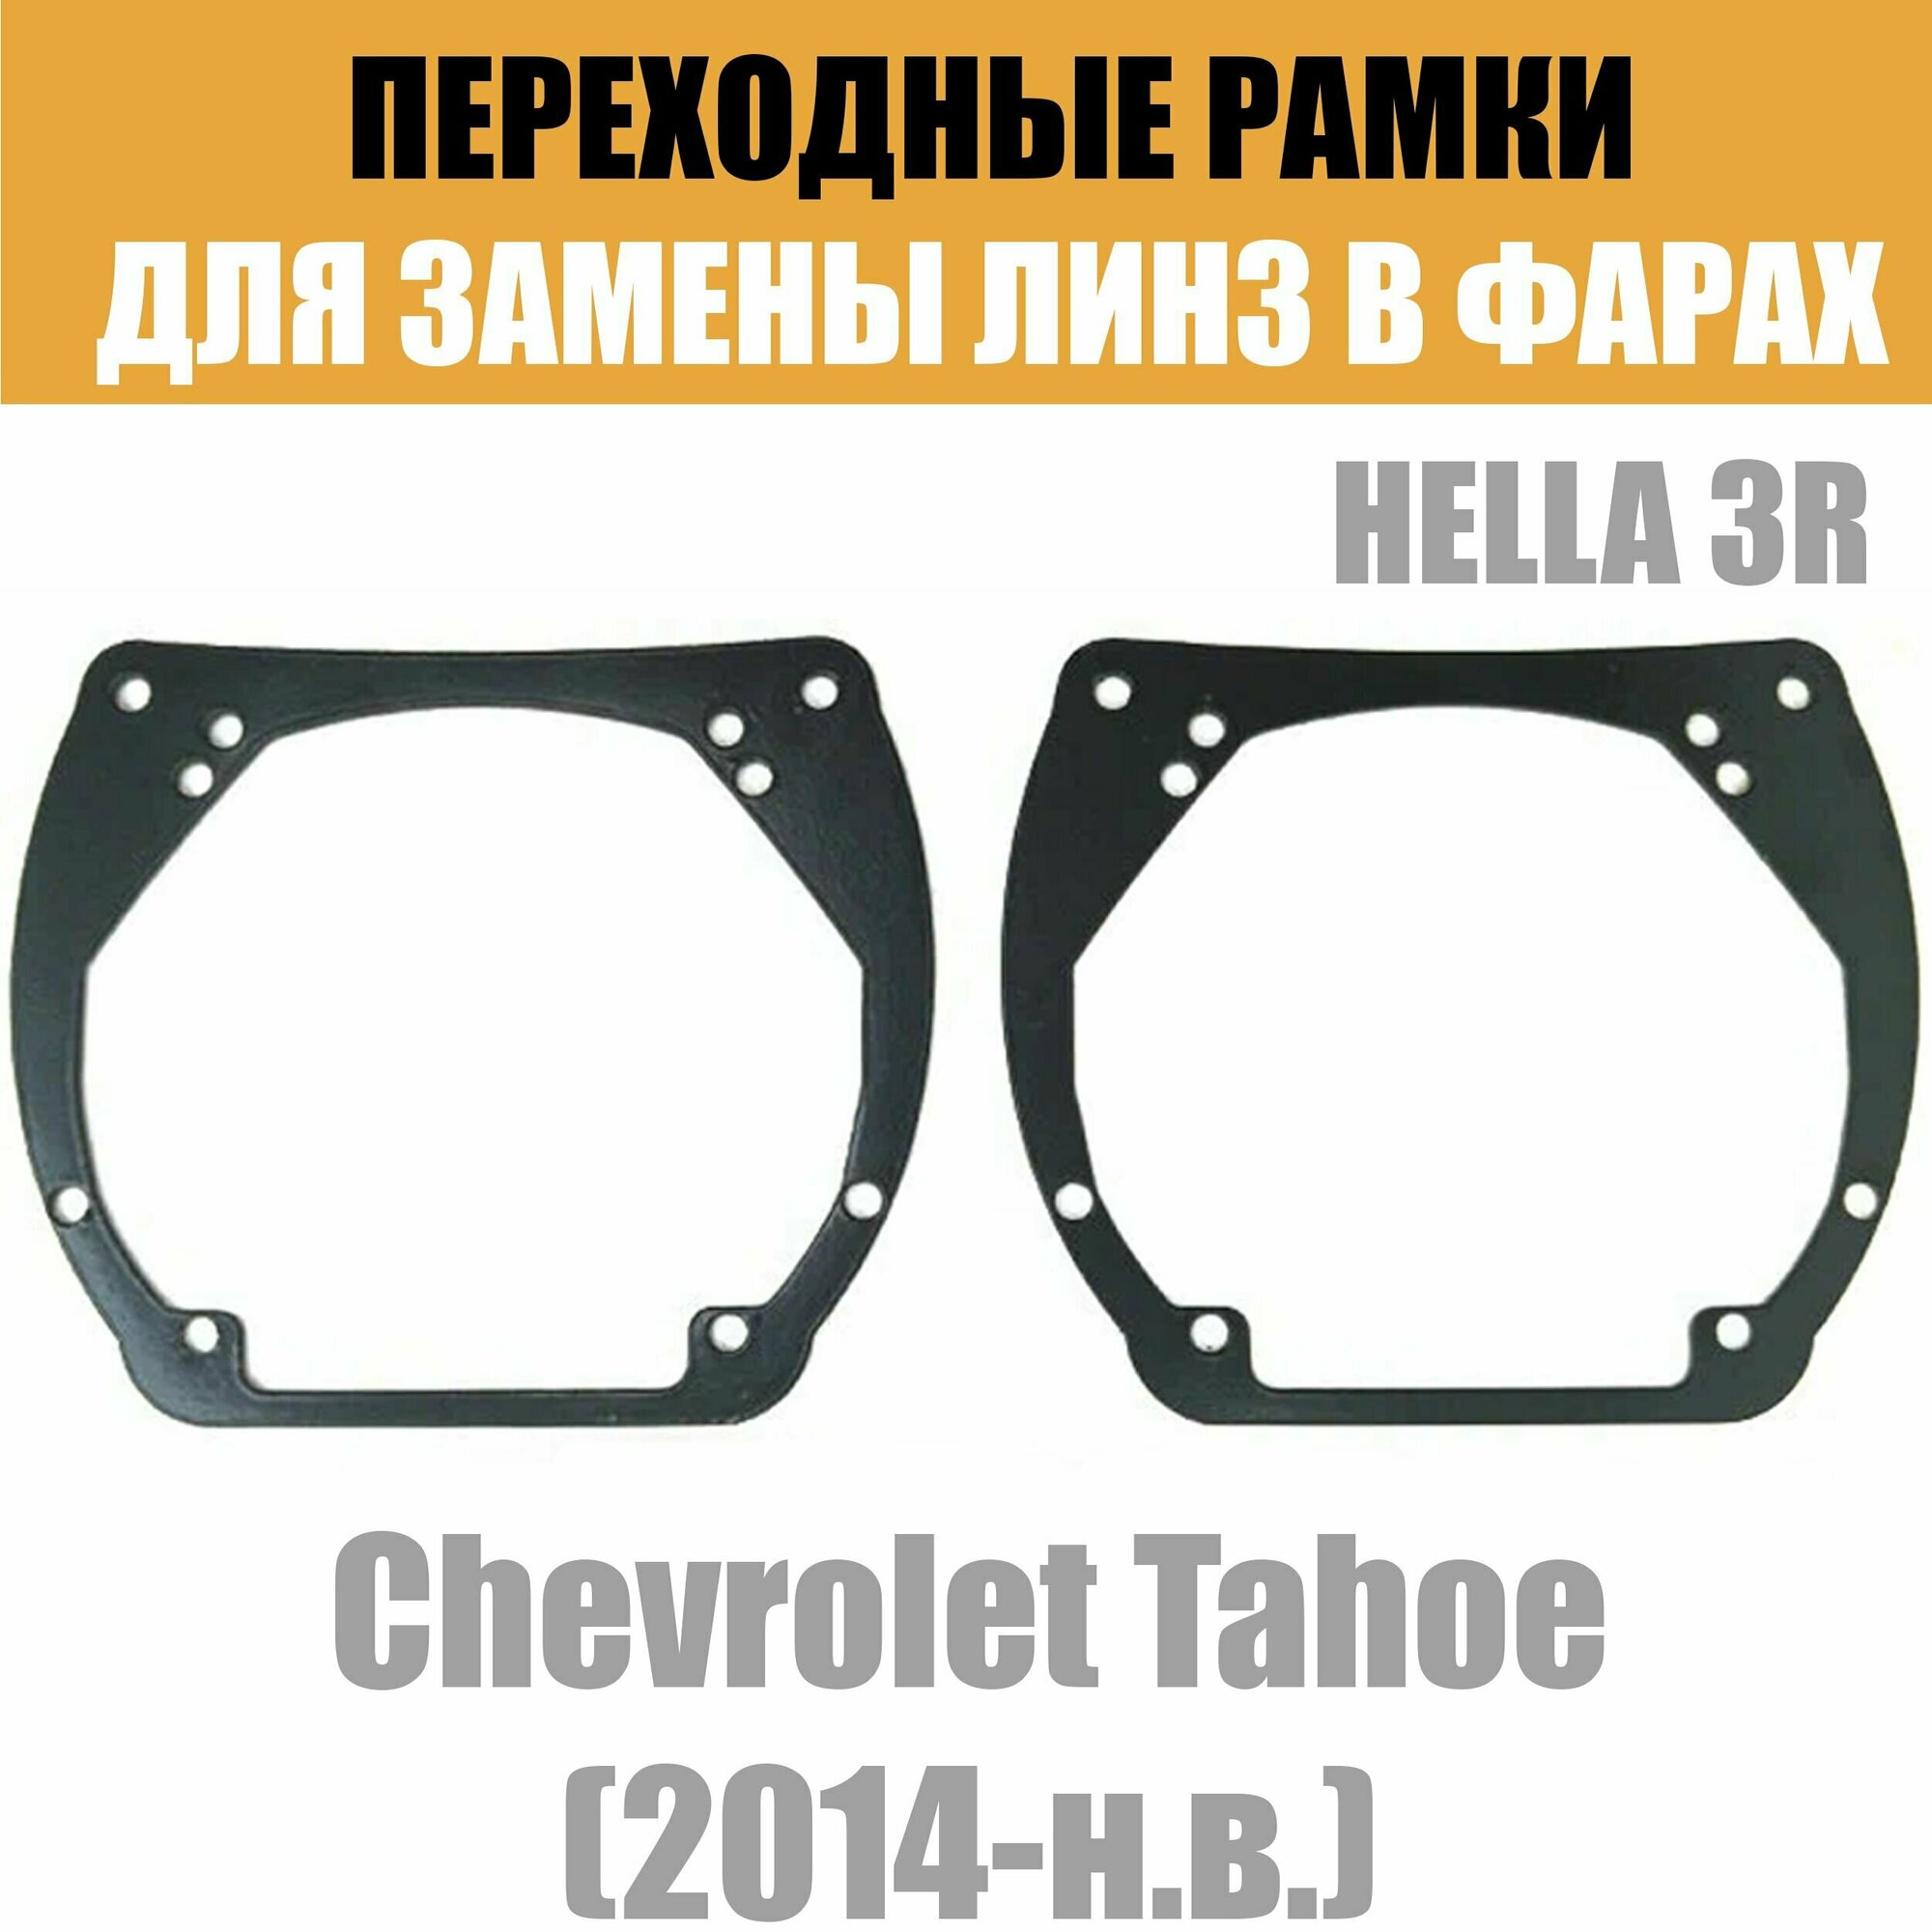 Переходные рамки для линз №12 на Chevrolet Tahoe (2014-2021) под модуль Hella 3R/Hella 3 (Комплект 2шт)